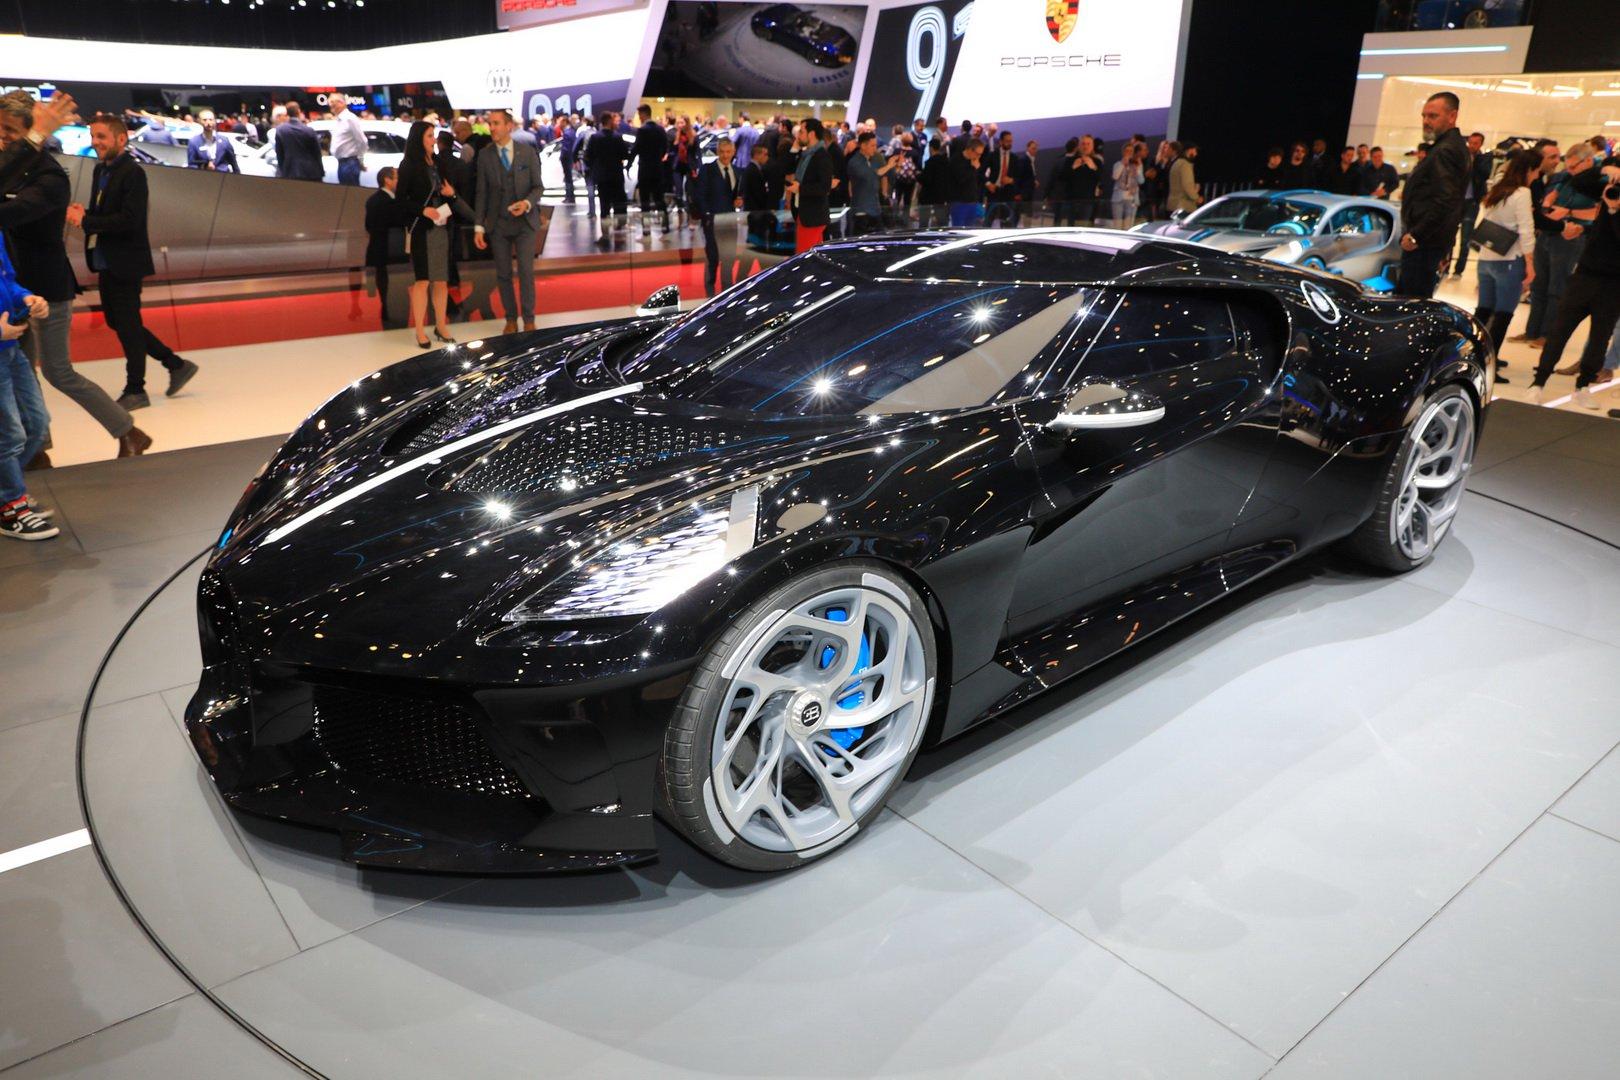 Unikatni Bugatti La Voiture Noire ušao u historiju: Najskuplji novi automobil prodat za 16,7 miliona eura - Avaz